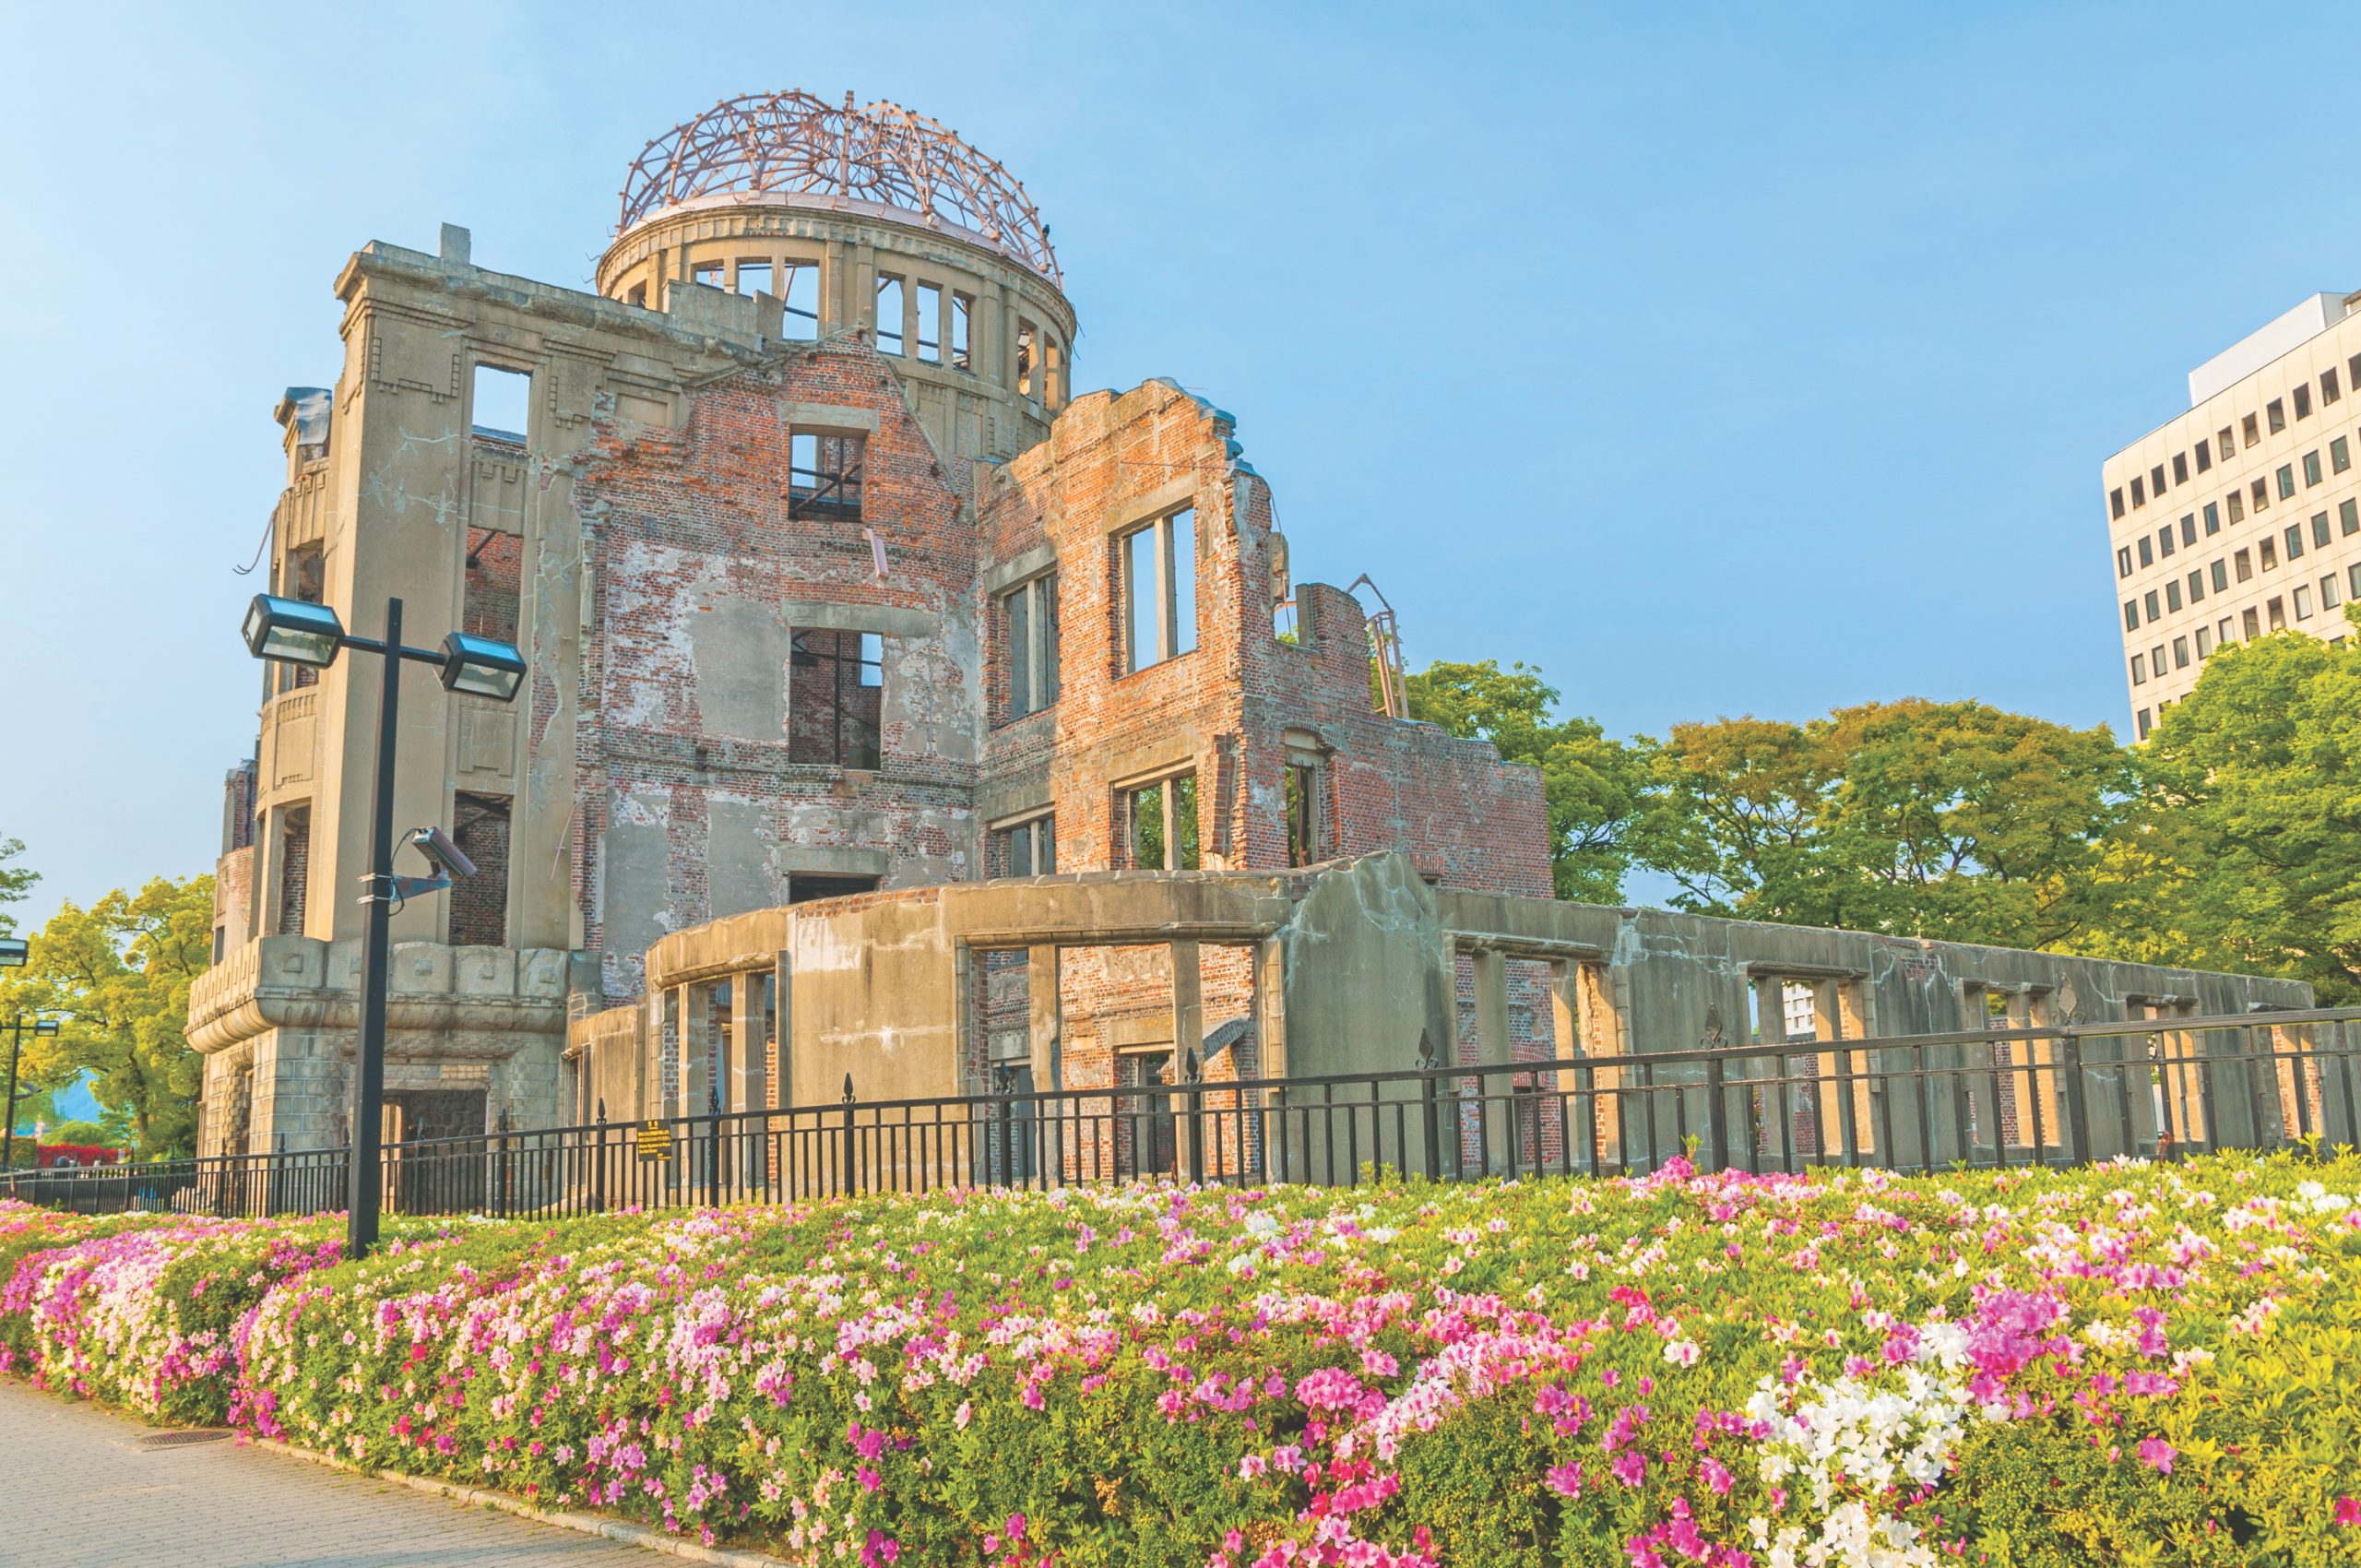 Atomic Bomb Dome memorial building in Hiroshima, Japan.